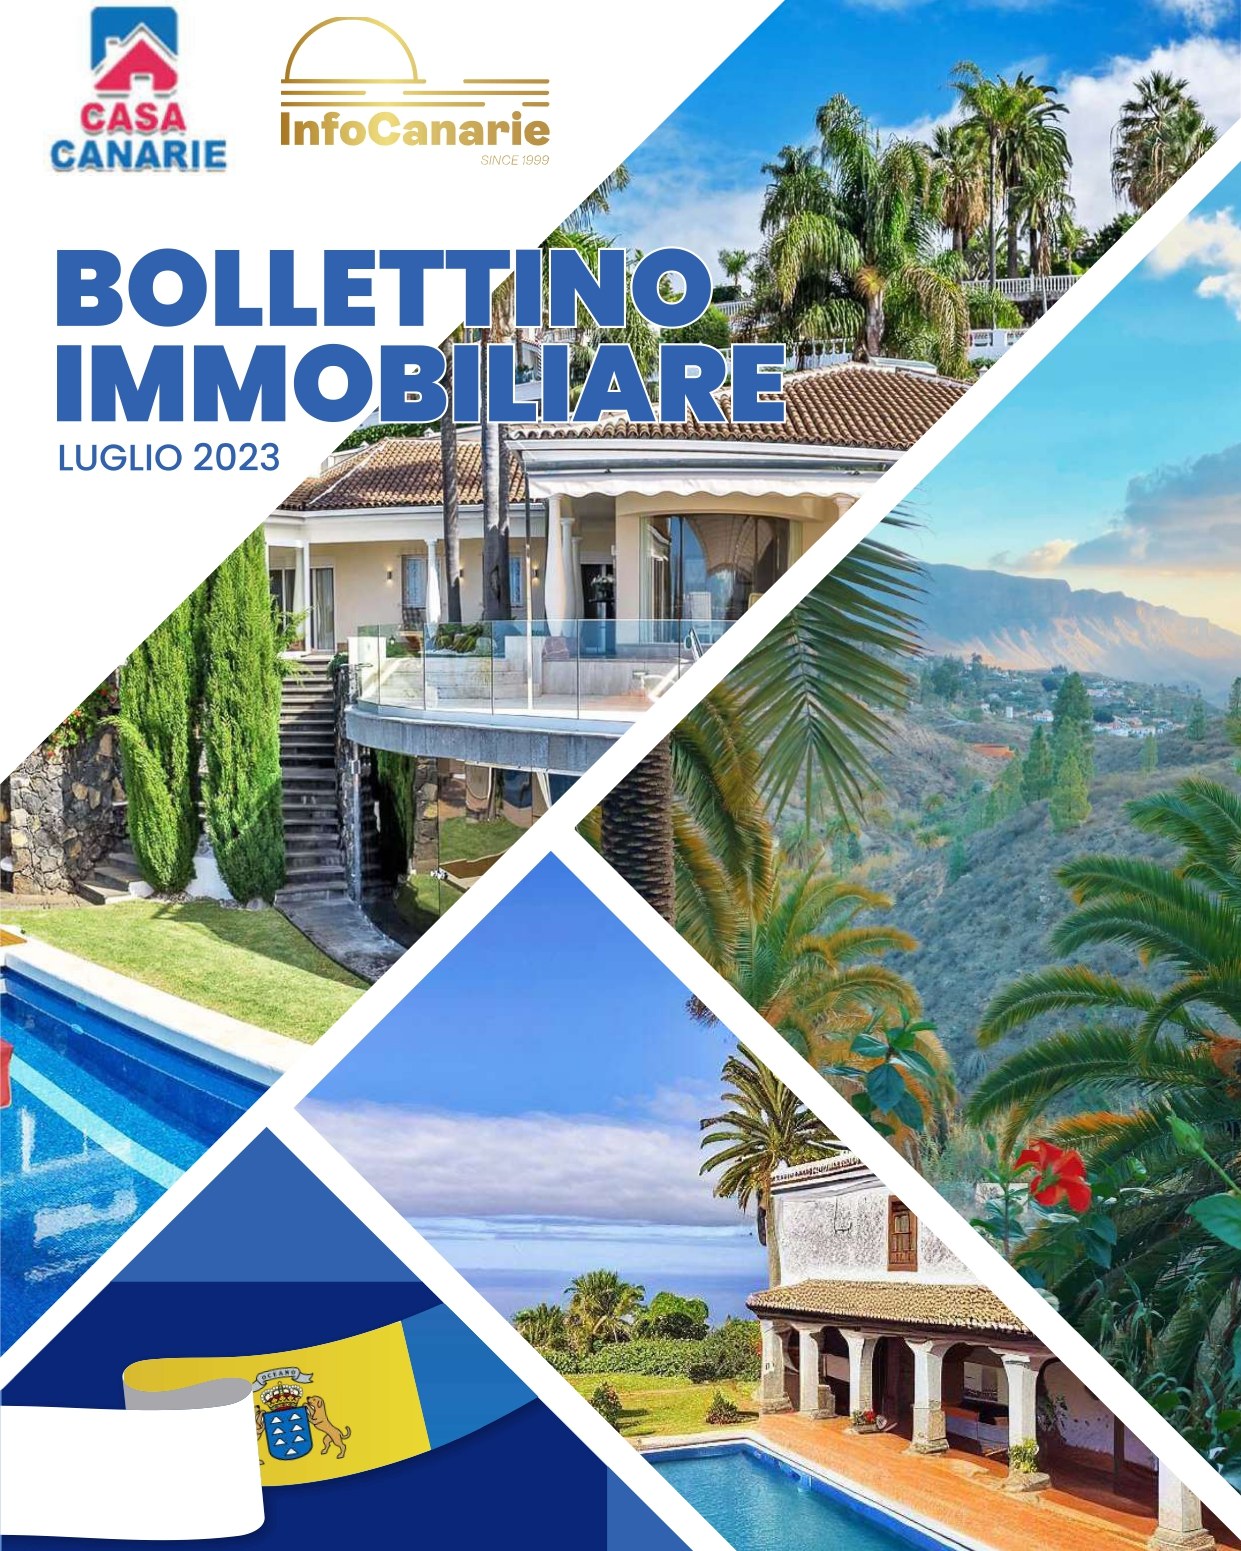 Borsino Immobiliare Canarie Bollettino Catalogo Tenerife Luglio 2023 Rete Immobiliare Canarie by InfoCanarie